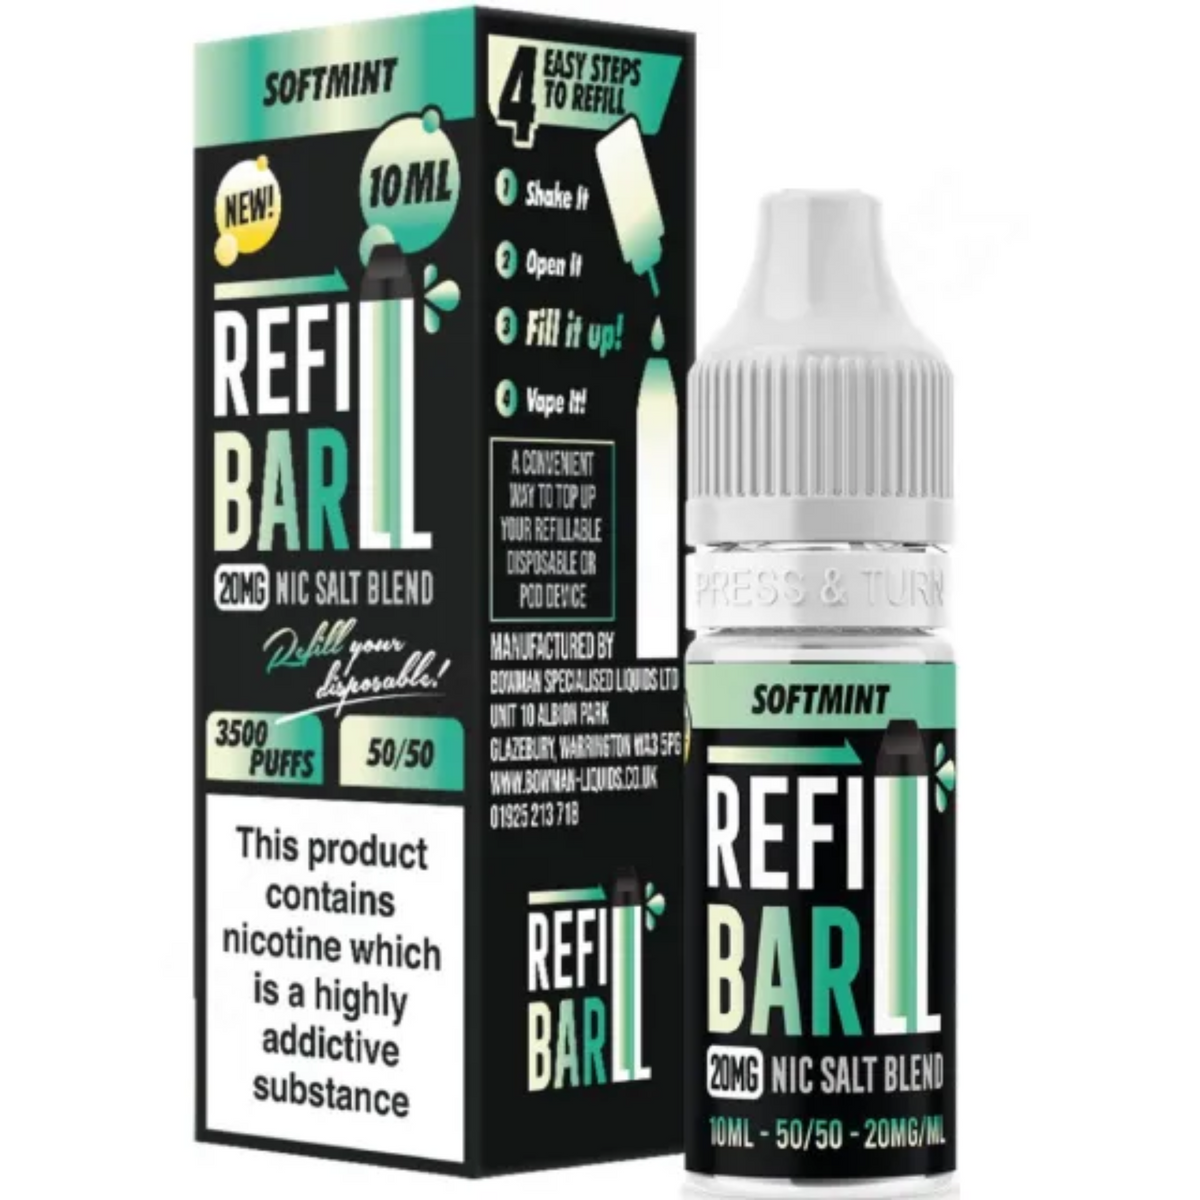 Refill Bar - Softmint 10ml